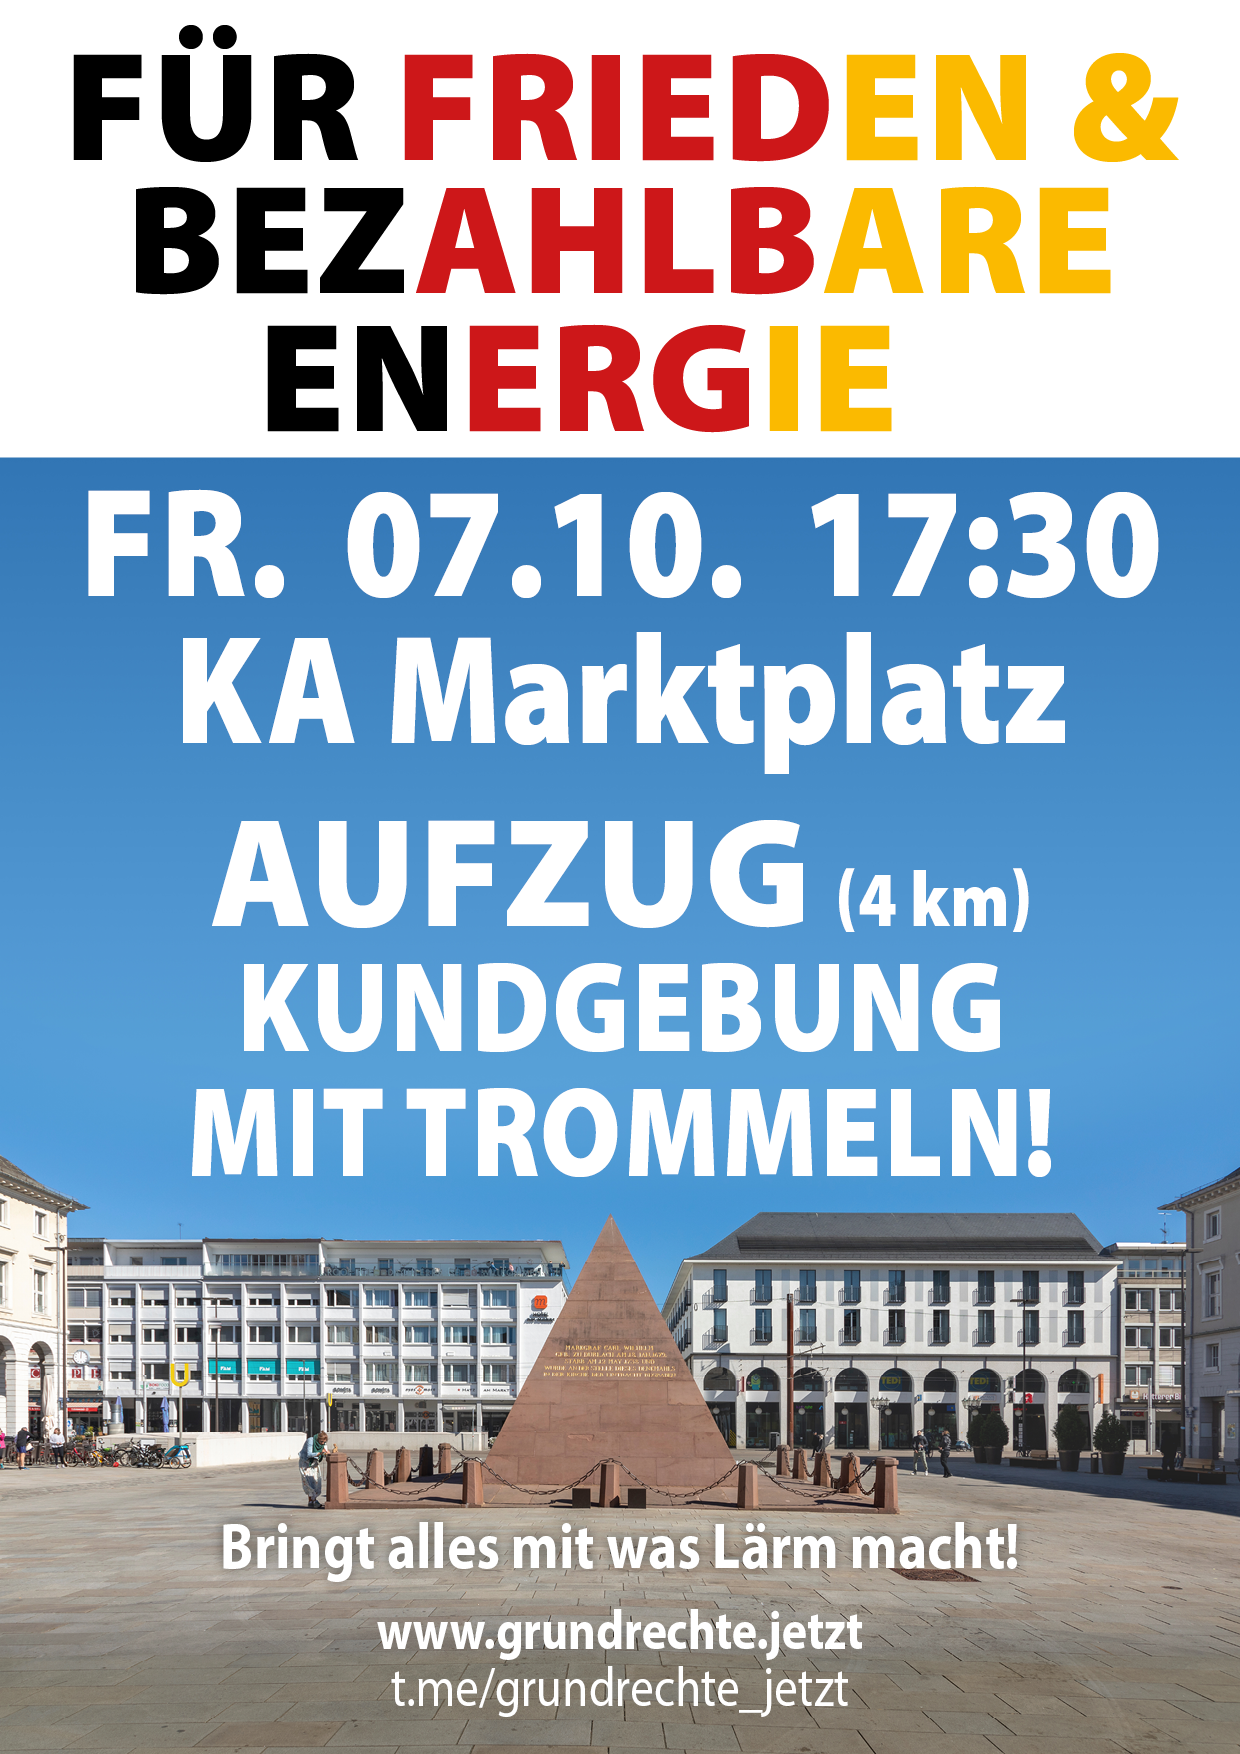 Für Frieden & bezahlbare Energie - Kundgebung mit Aufzug - Karlsruhe Marktplatz 07.10.2022 17:30 Uhr